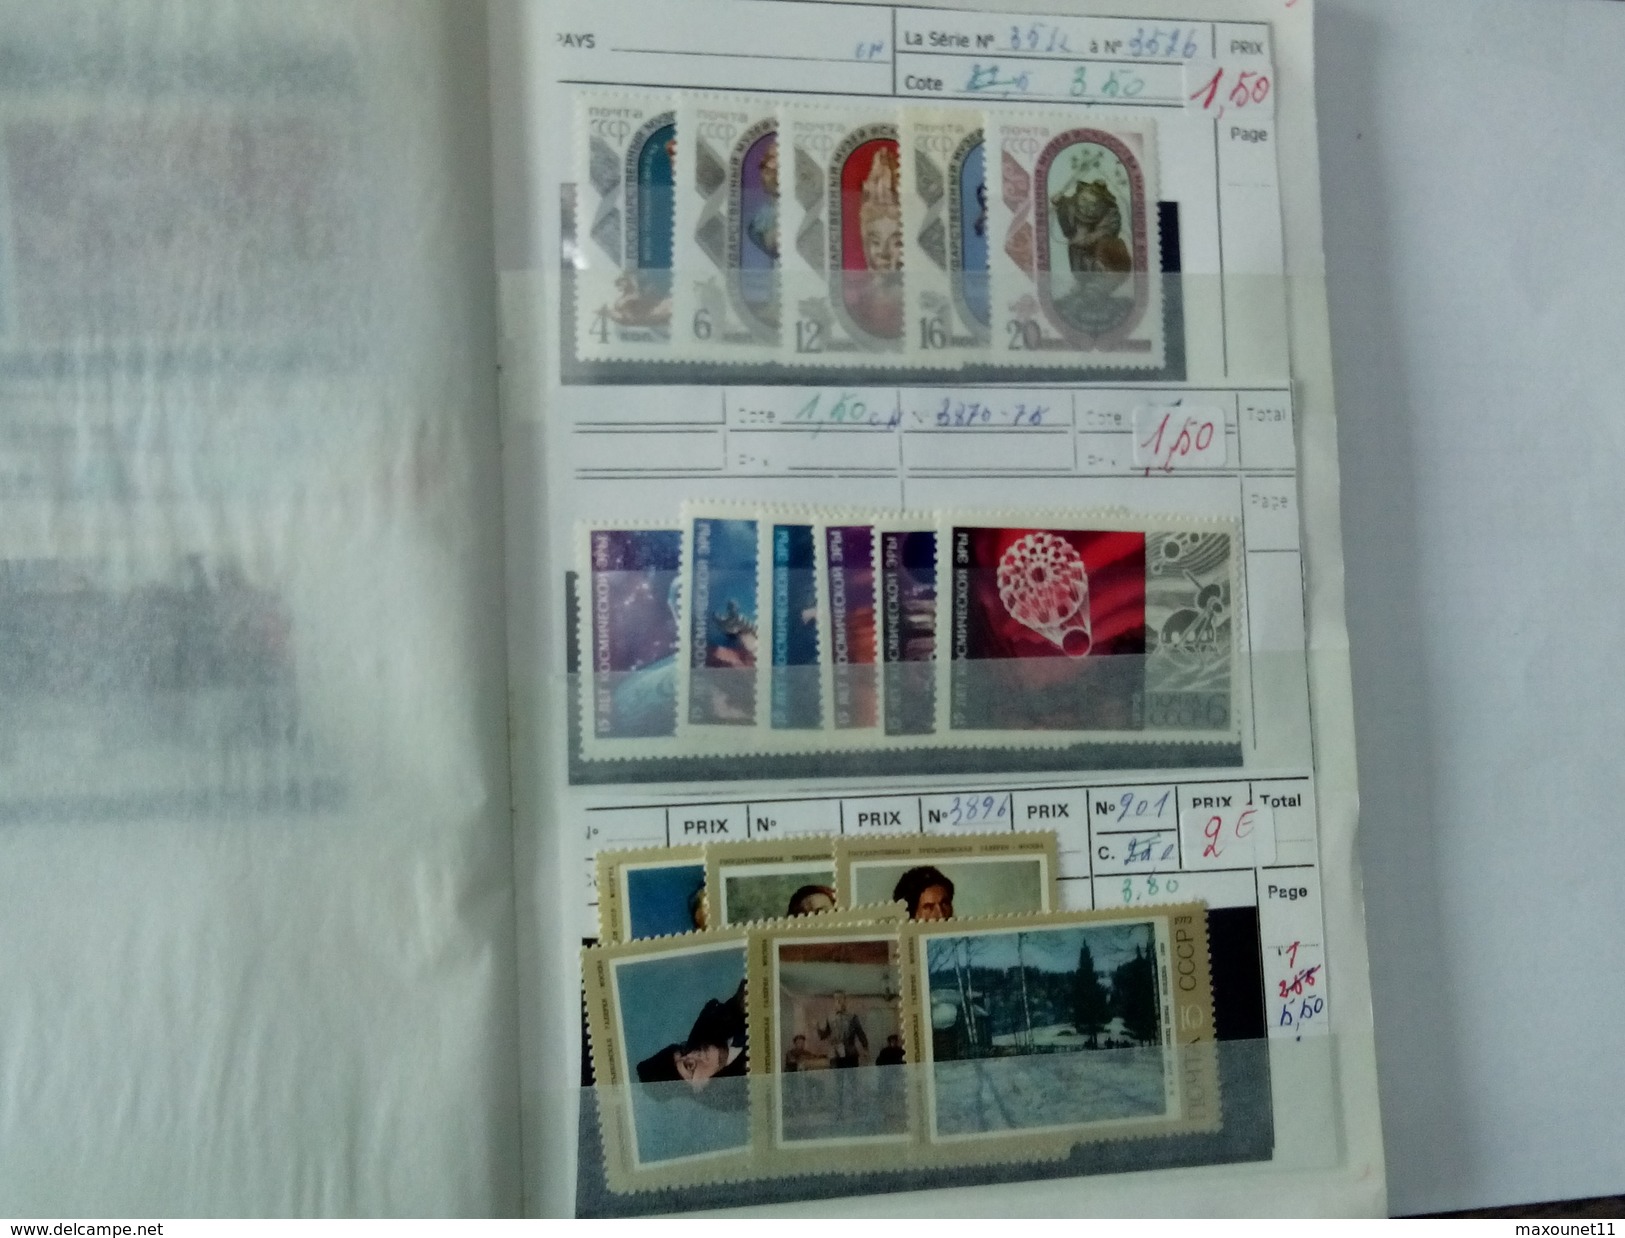 Petit album de timbres neufs de Russie .